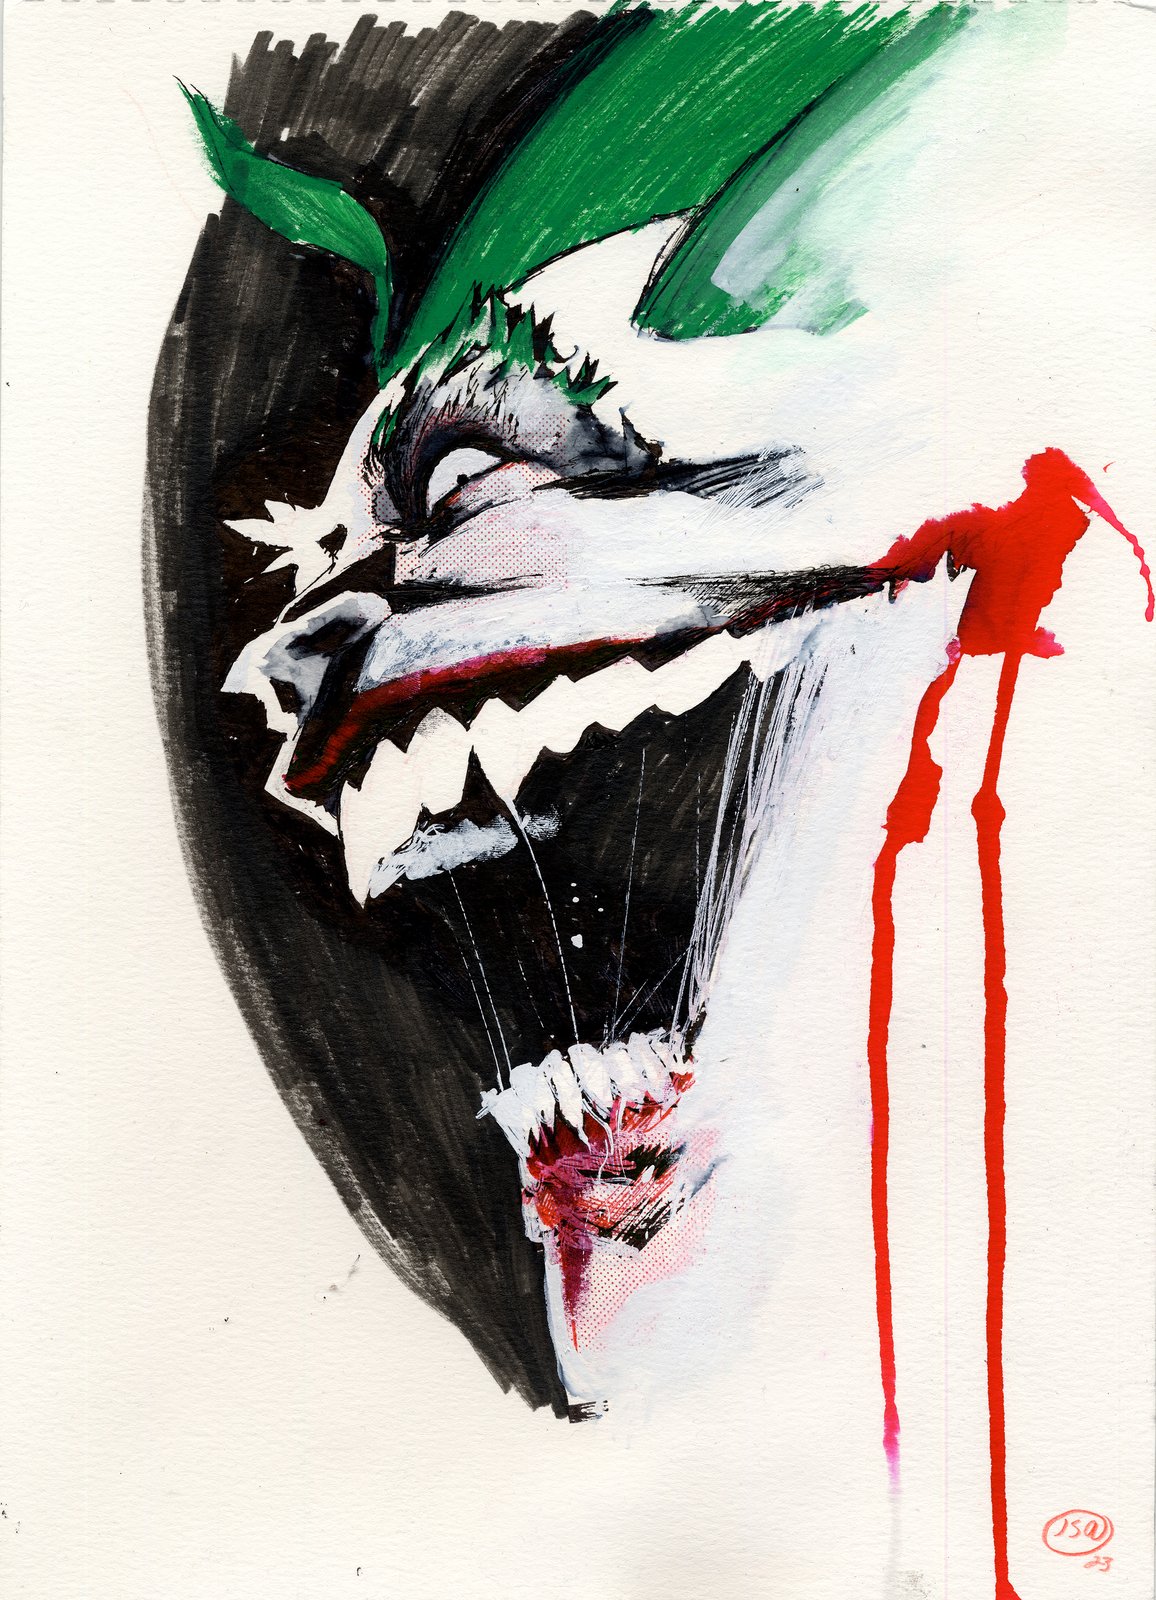 Image of Joker